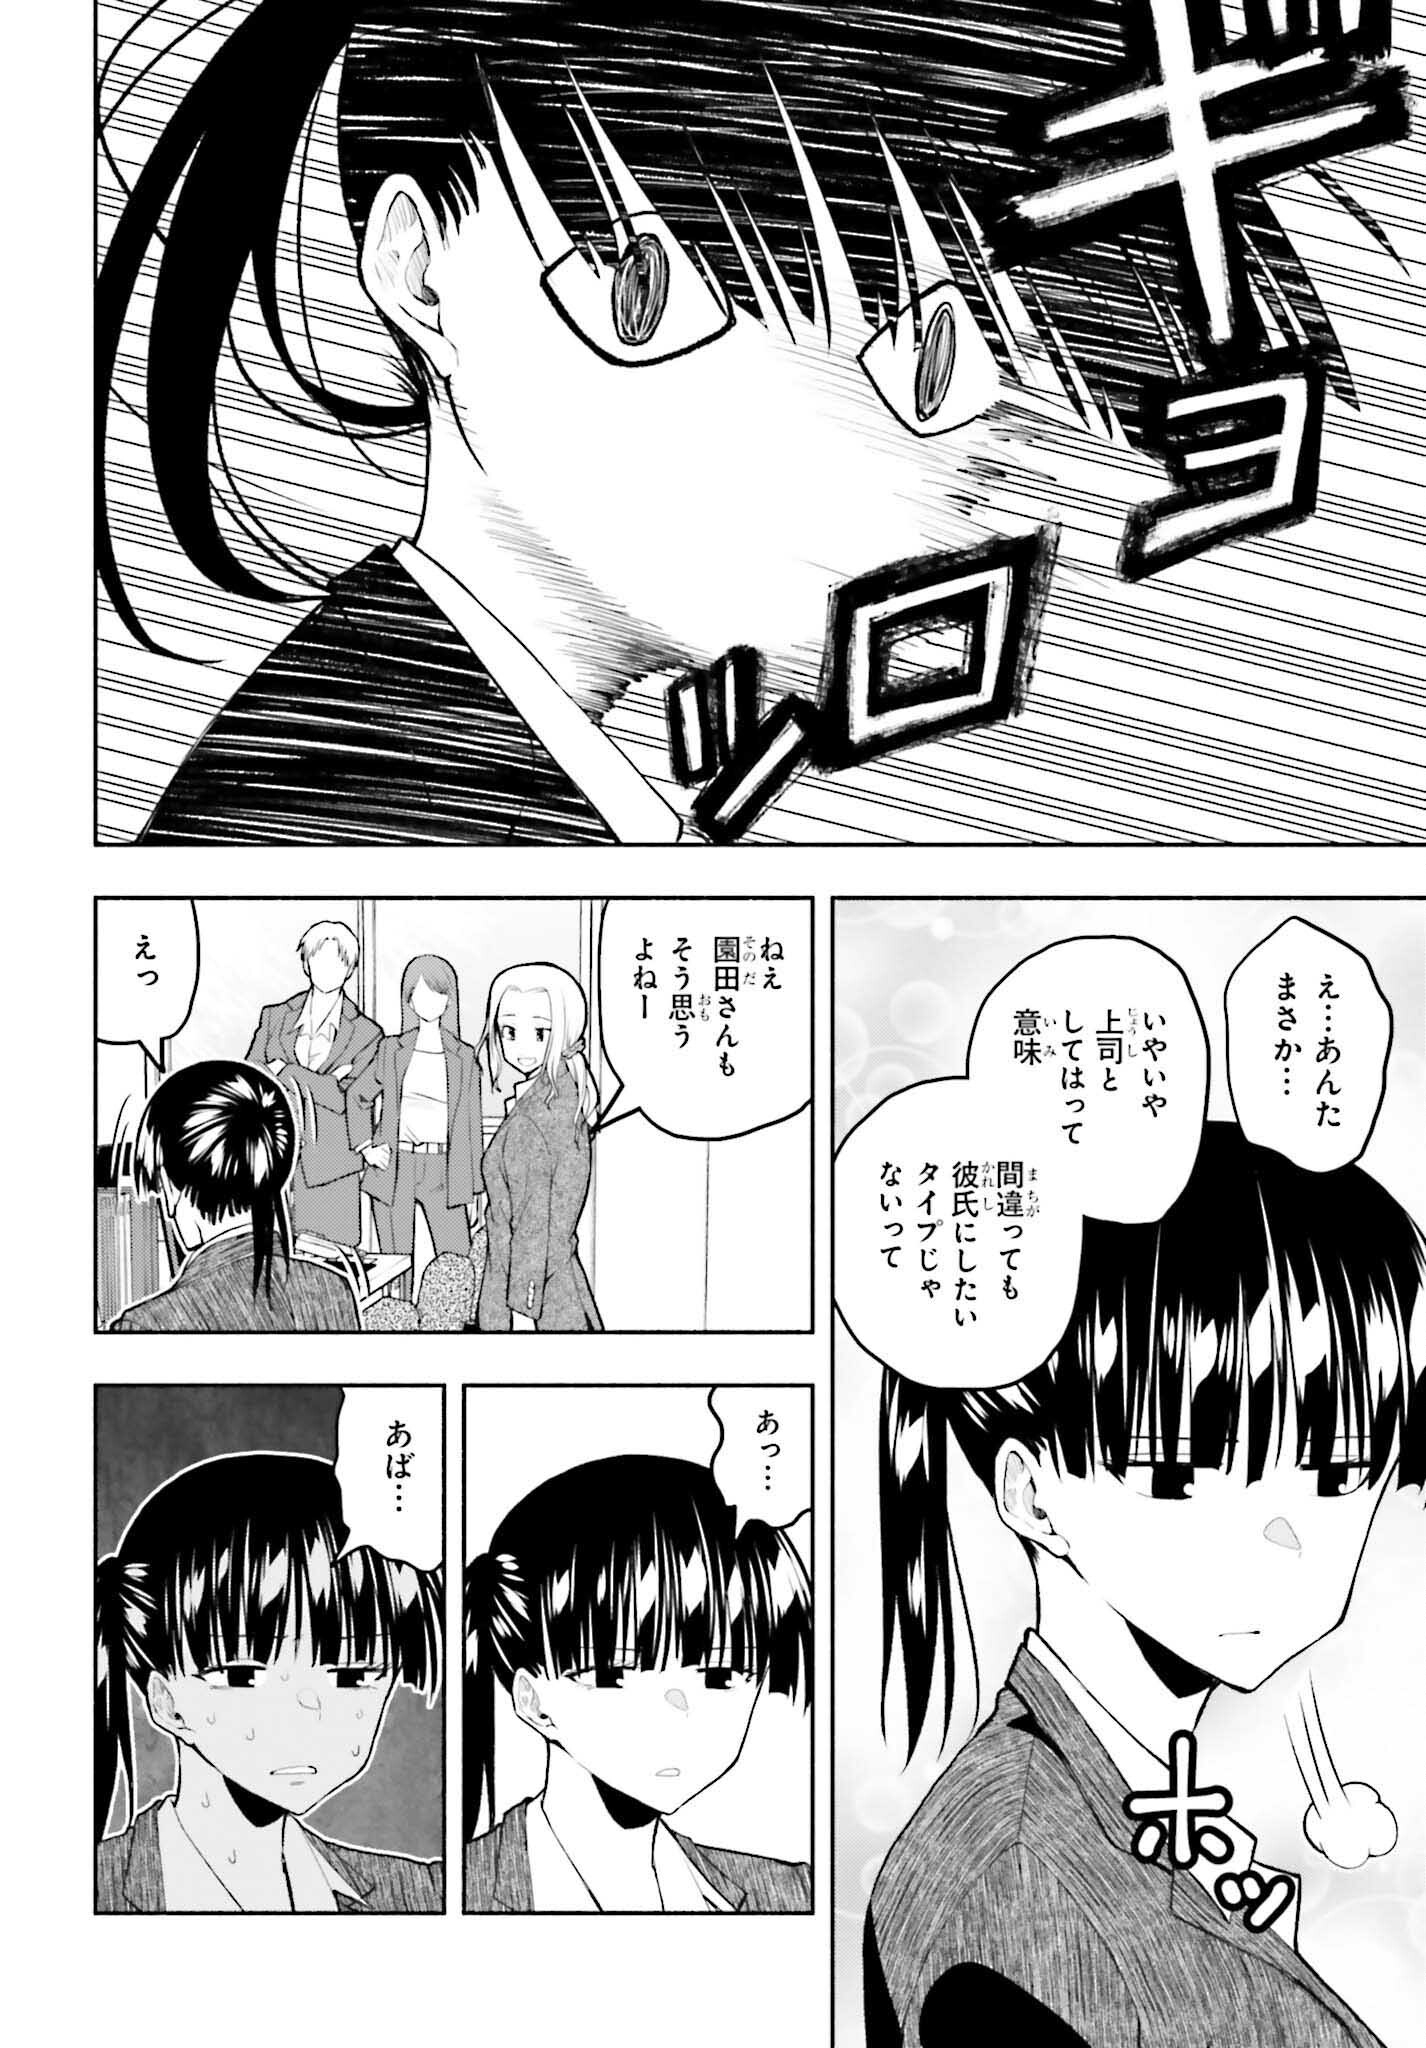 Omiai ni Sugoi Komyushou ga Kita - Chapter 11 - Page 8